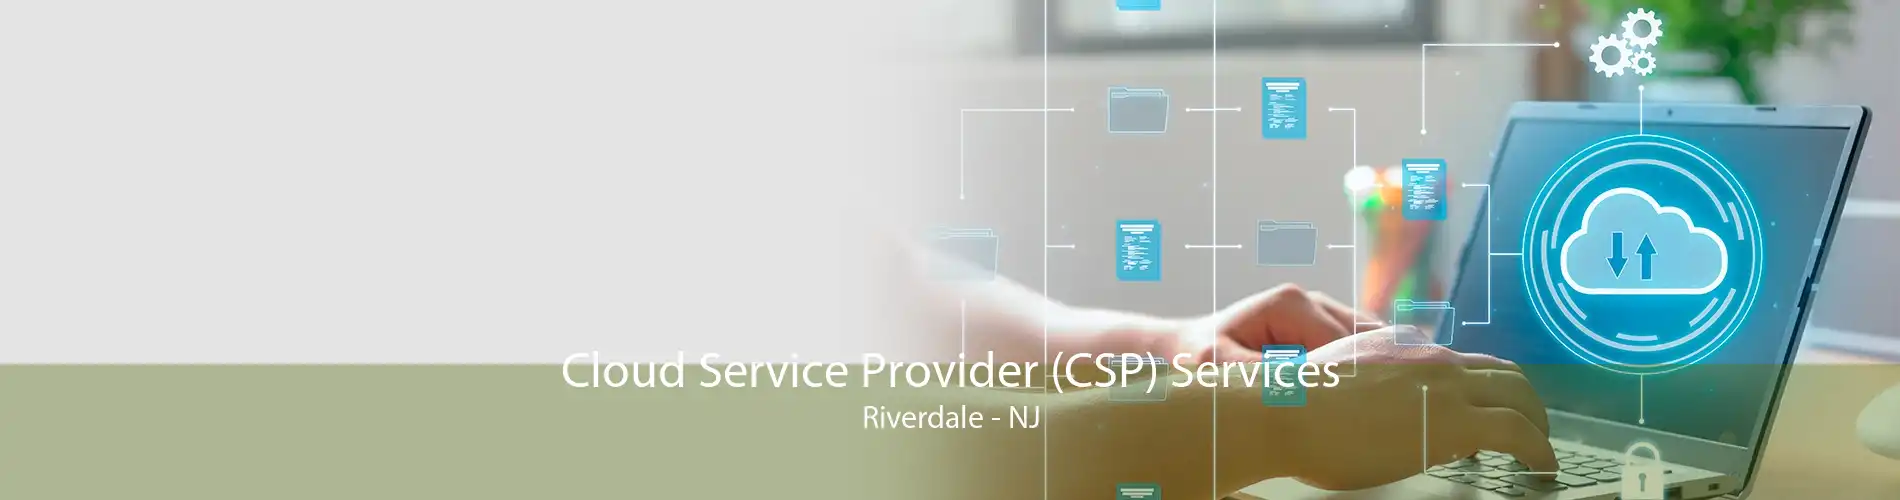 Cloud Service Provider (CSP) Services Riverdale - NJ